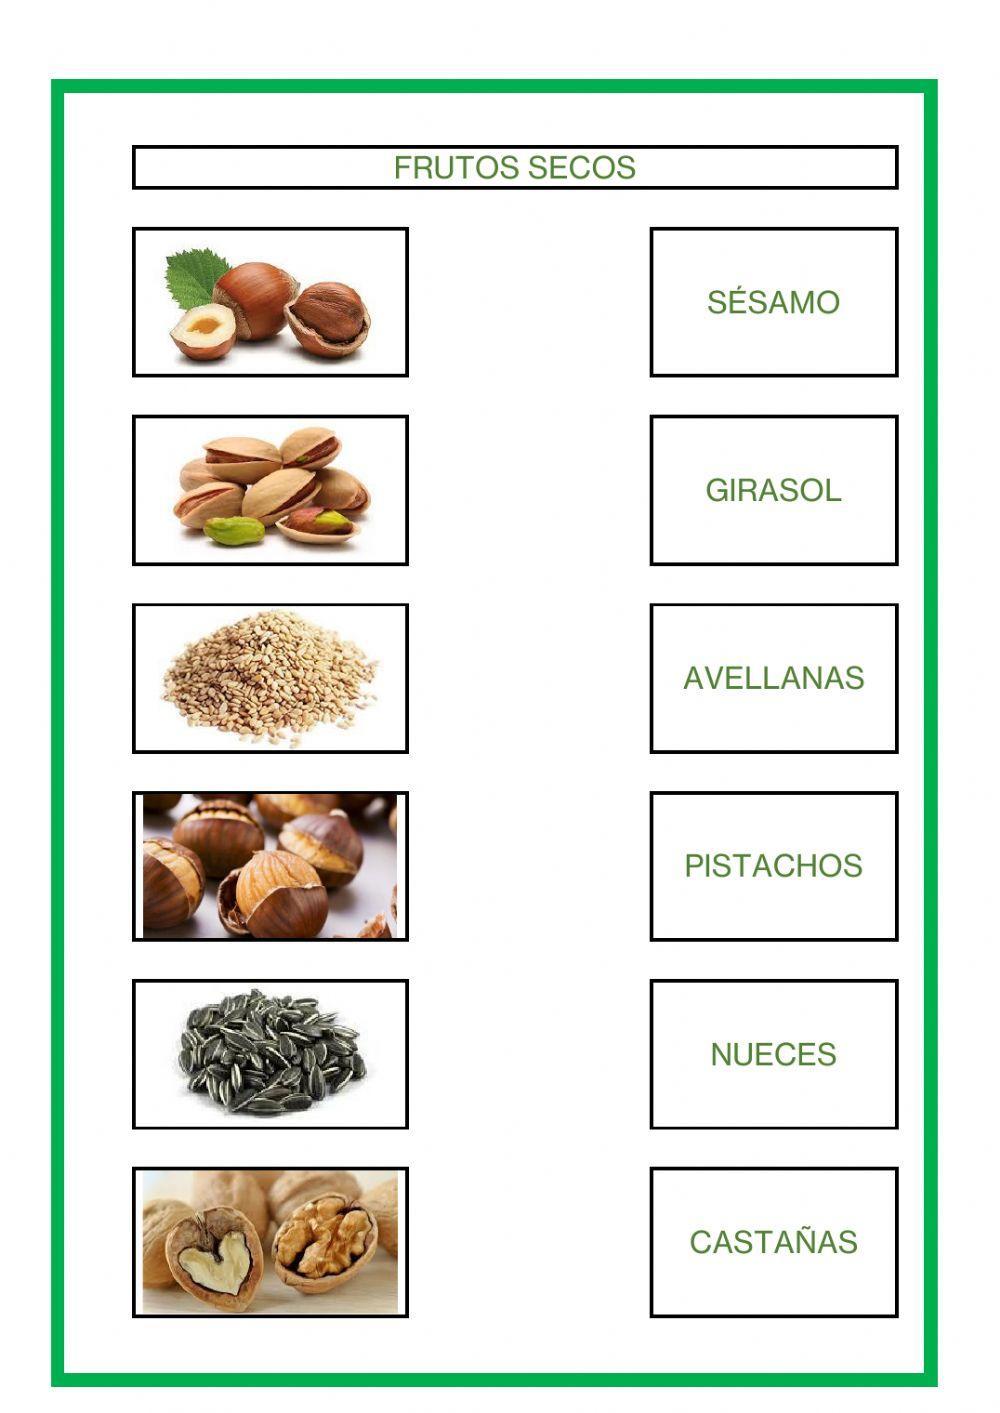 Cereales, legumbres y frutos secos I